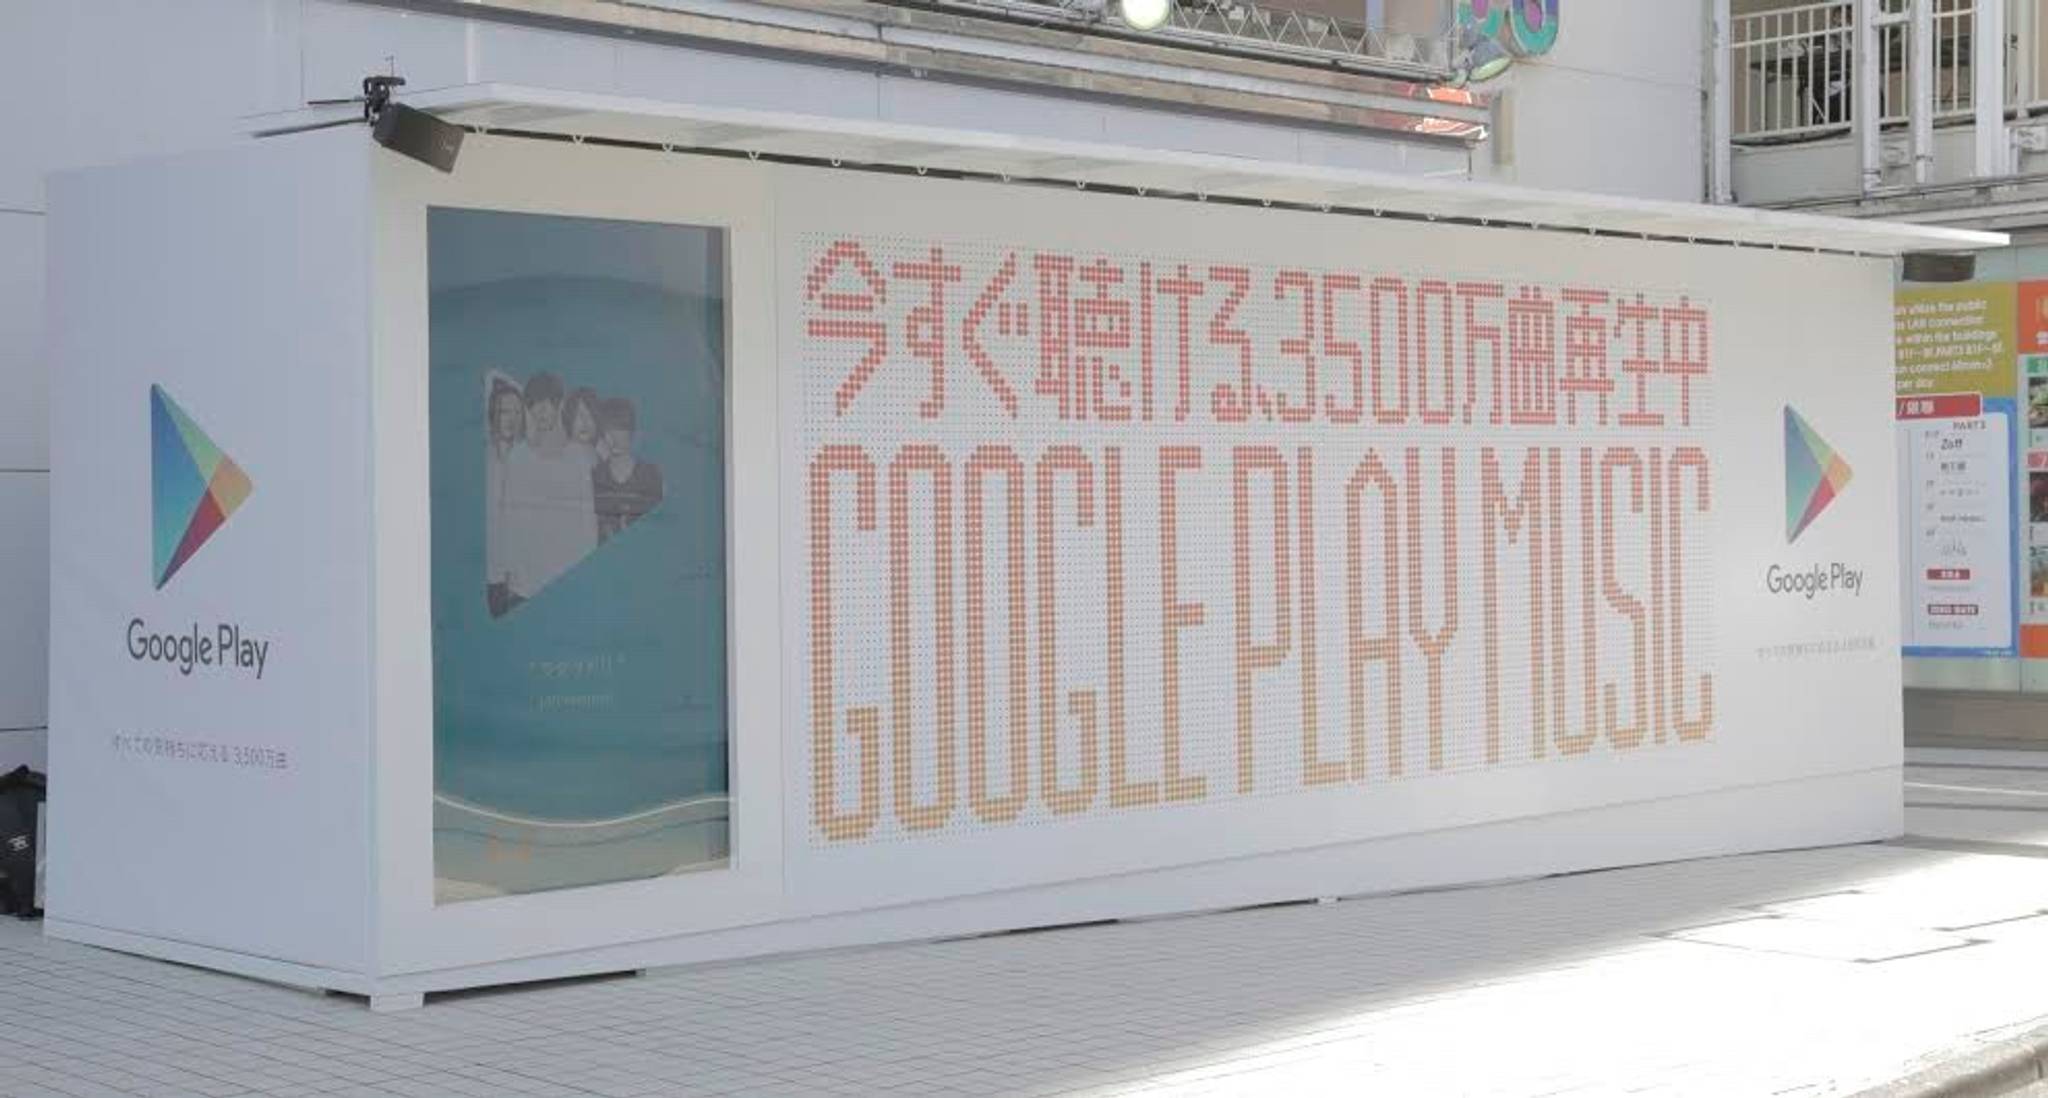 Google Play billboard streams music in Japan